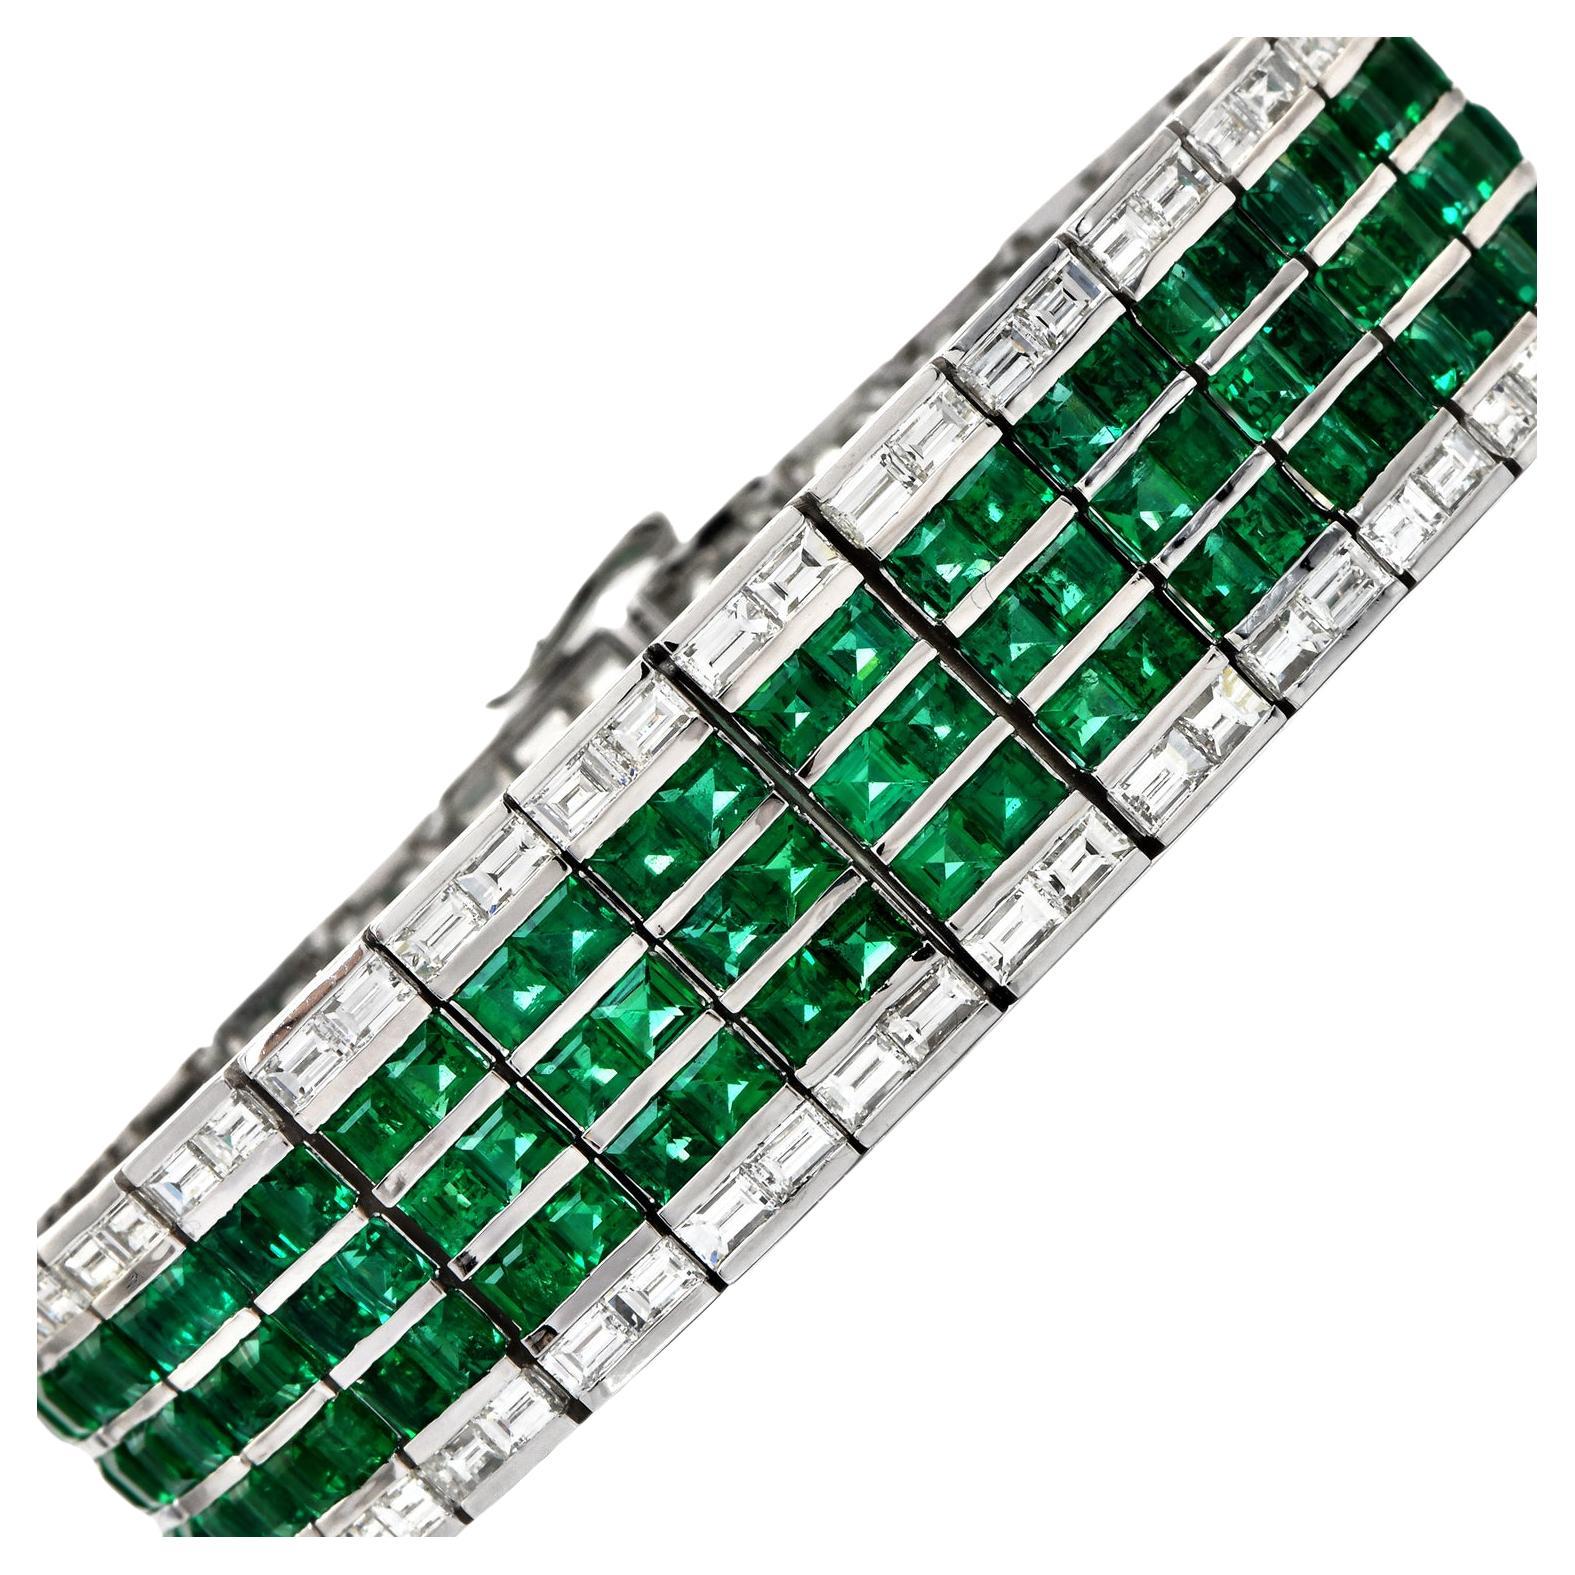 Dieses hochwertige Smaragdarmband präsentiert fünf Reihen außergewöhnlicher kolumbianischer Smaragde und Diamanten in Chanel-Fassung.

Die Diamanten im Baguetteschliff wiegen zusammen ca. 10,20 Karat, Farbe F-G, Reinheit VS+, das Gesamtgewicht des